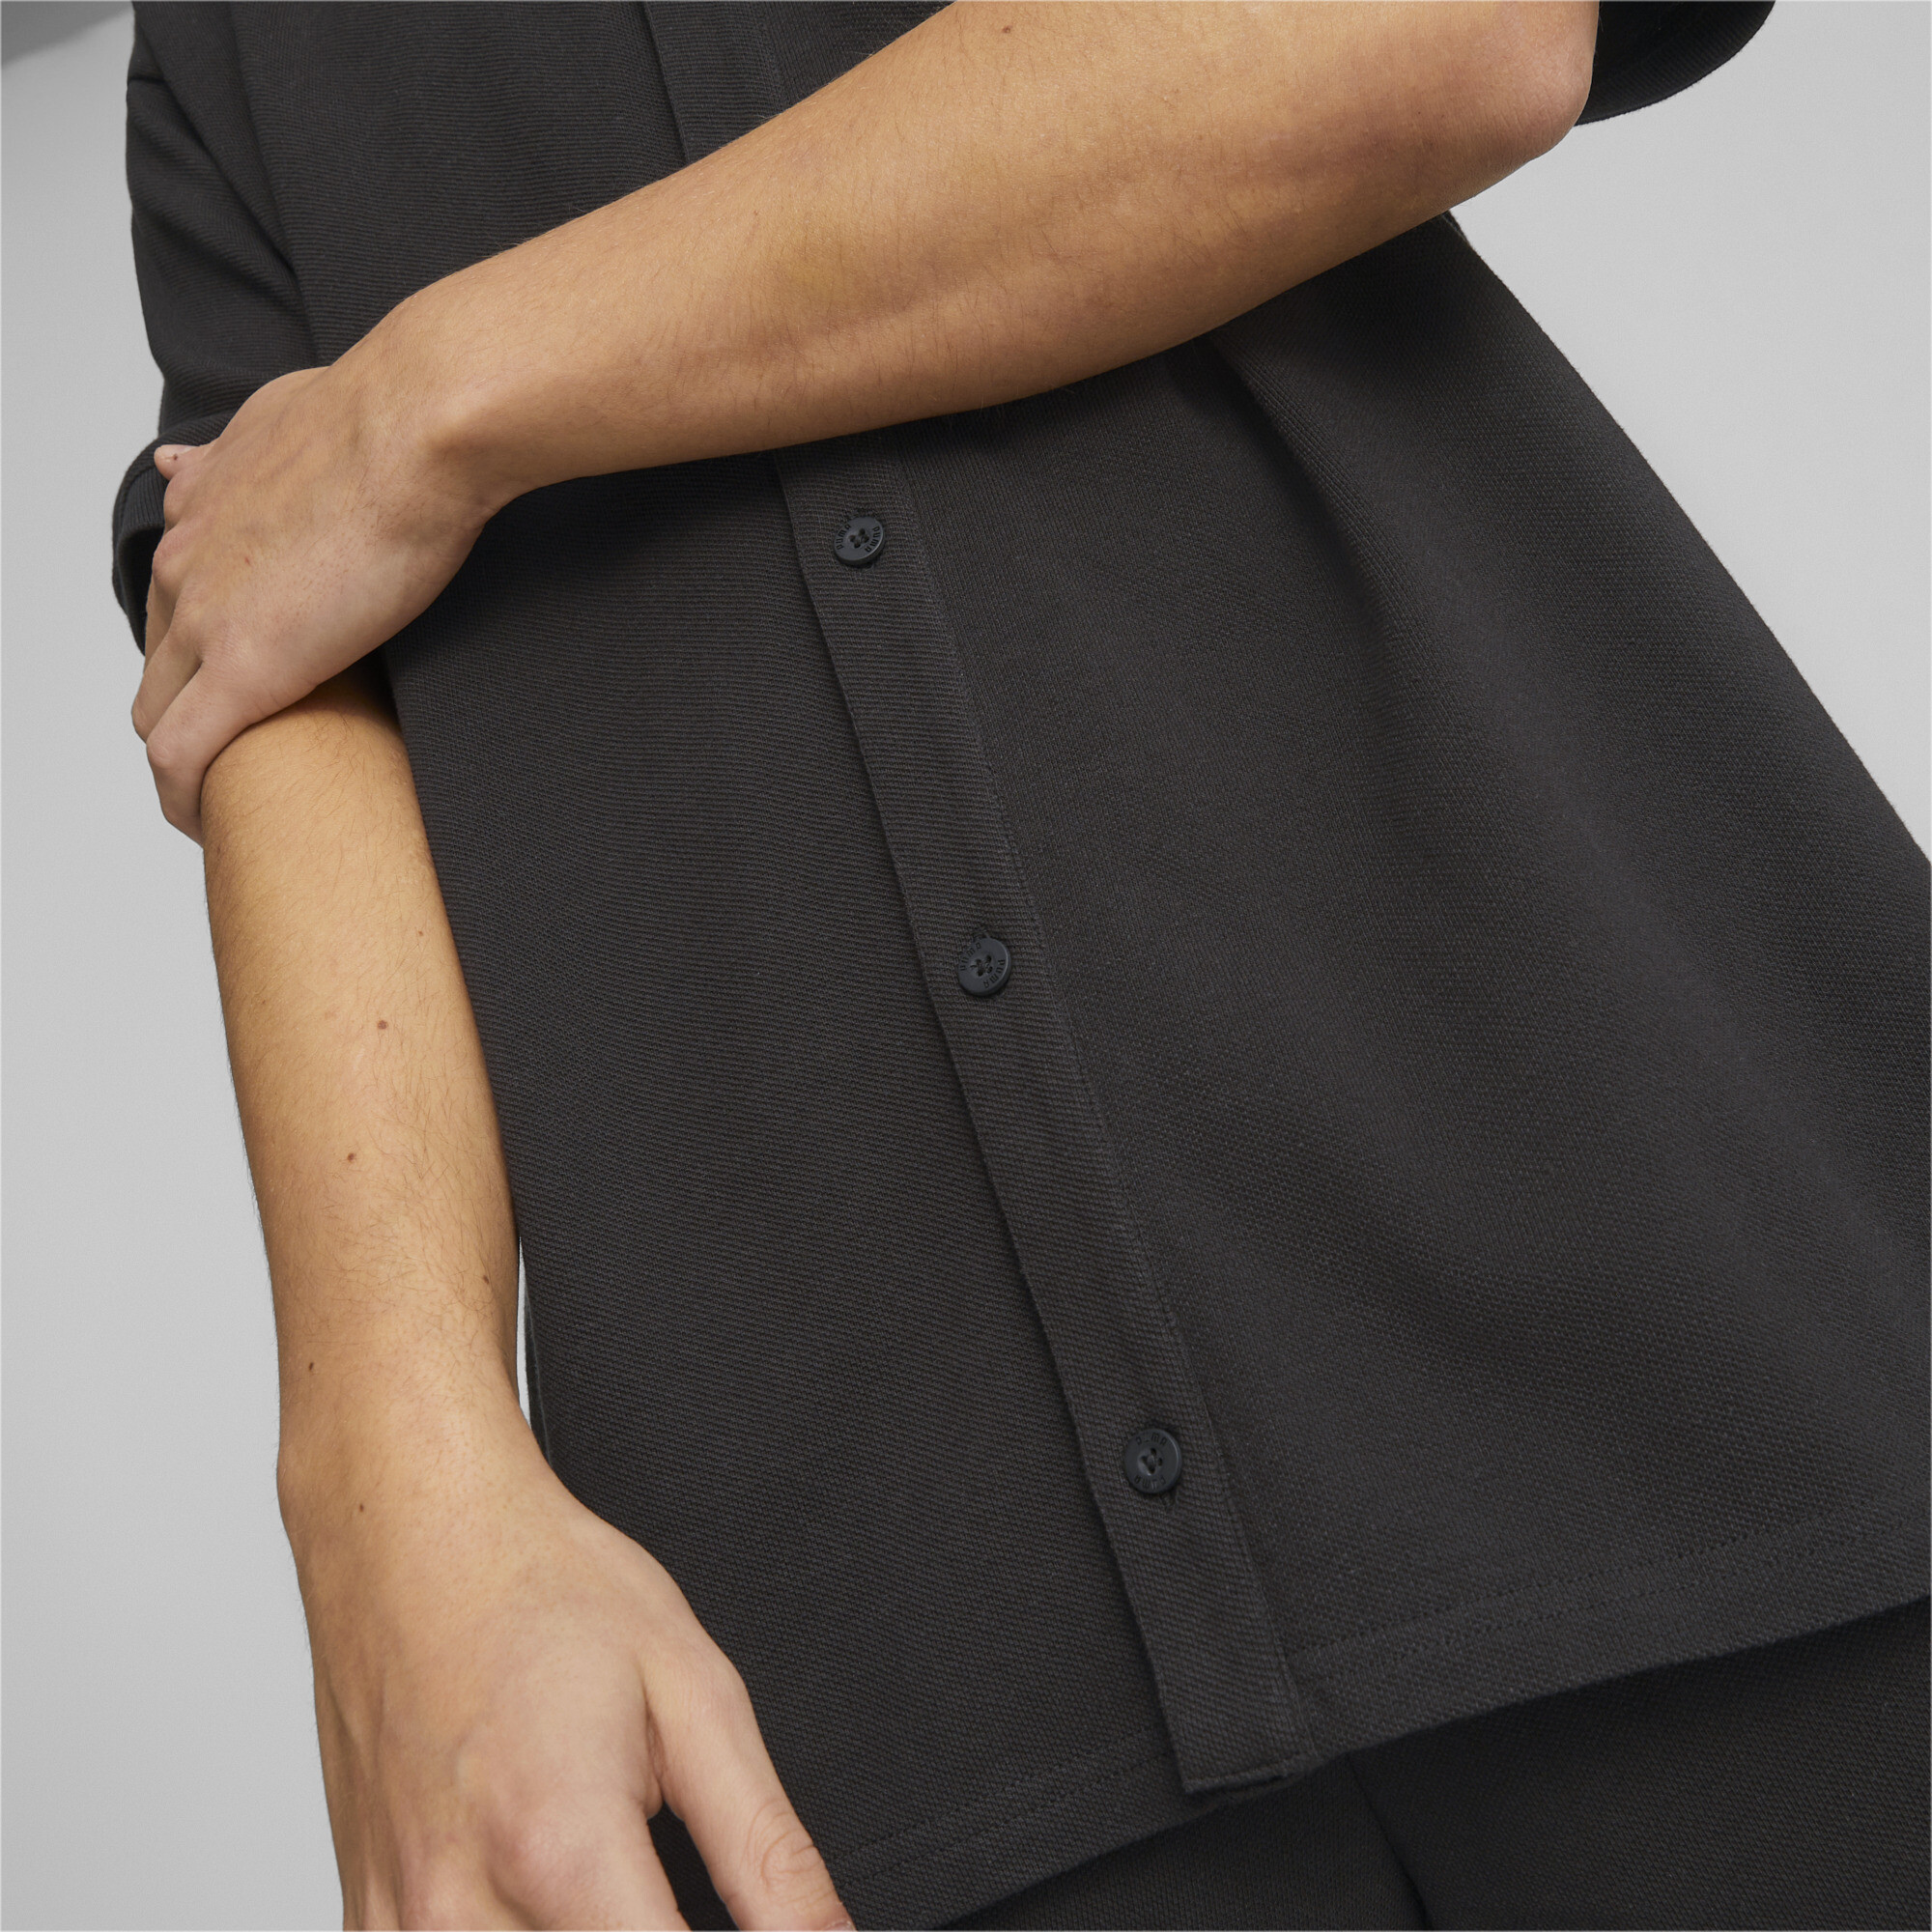 Men's PUMA Classics Pique Shirt Men In Black, Size XS